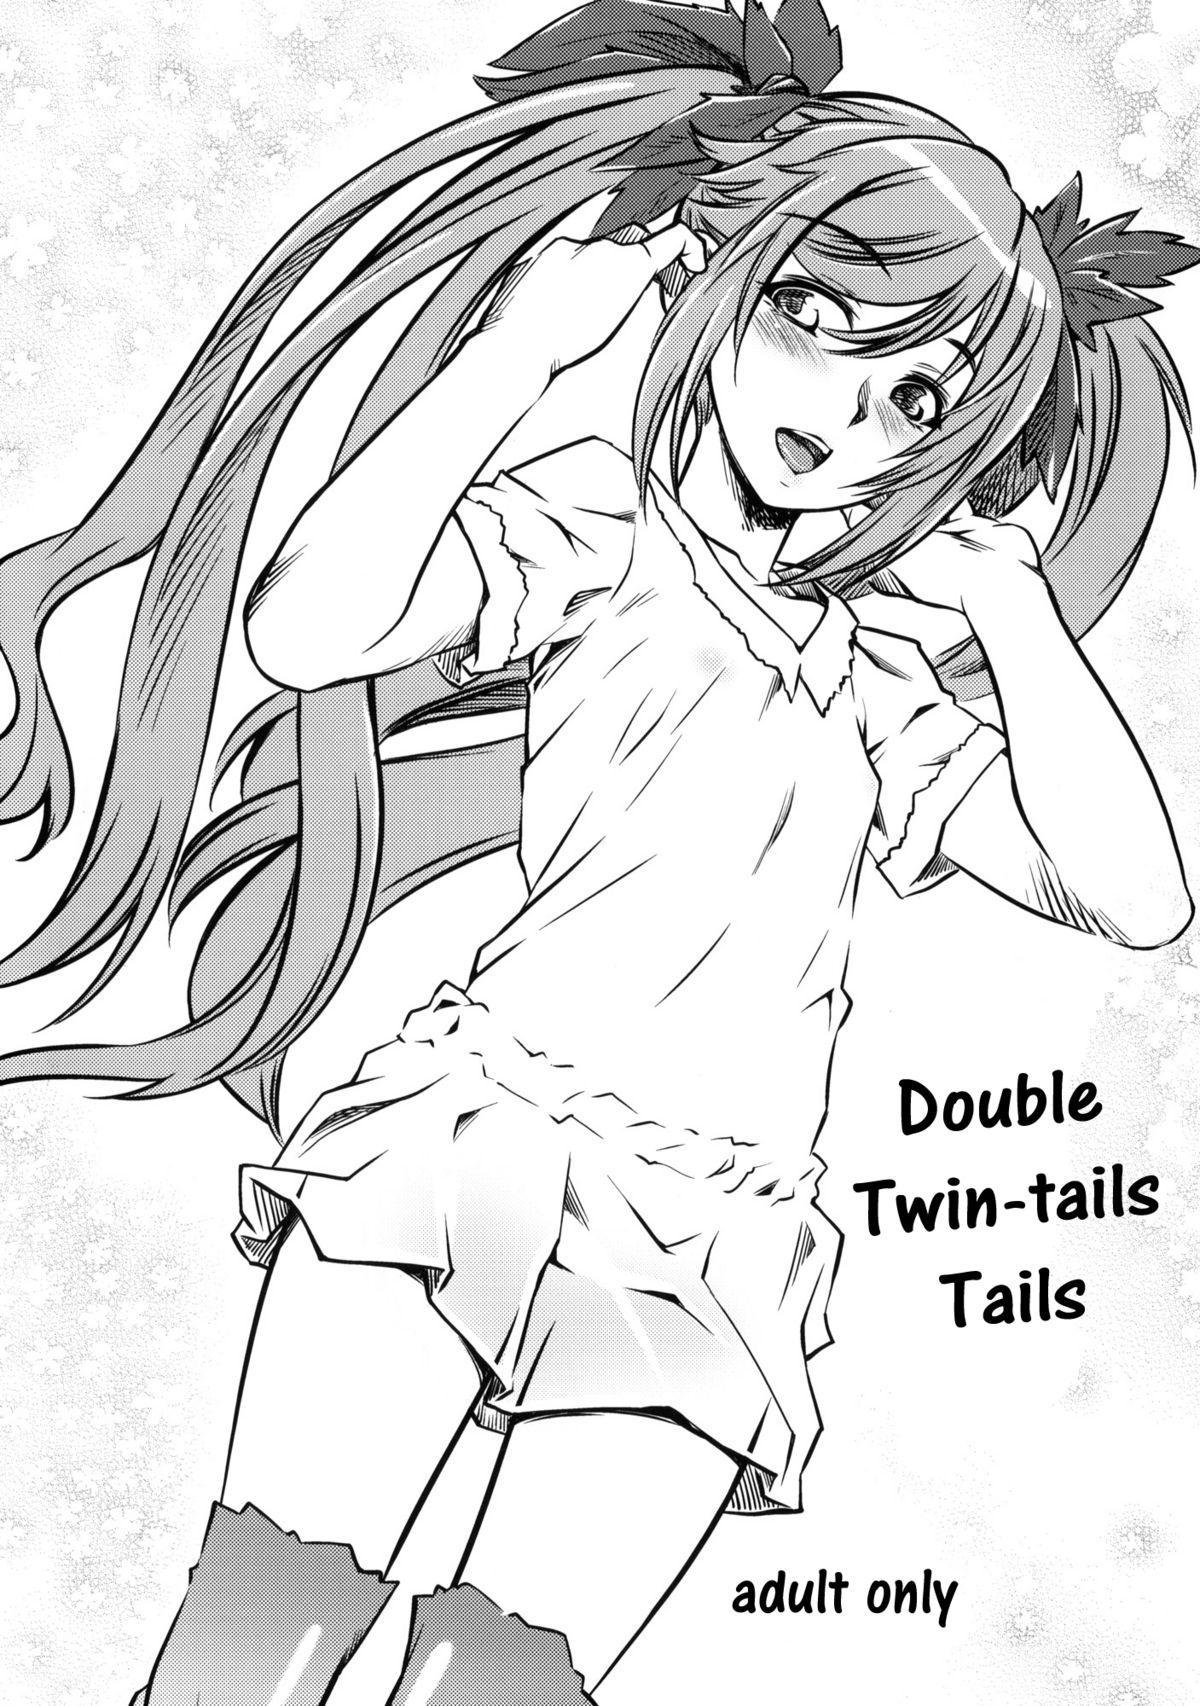 Dauble Twin Tail Shippo | Double Twin Tails Shippo 1